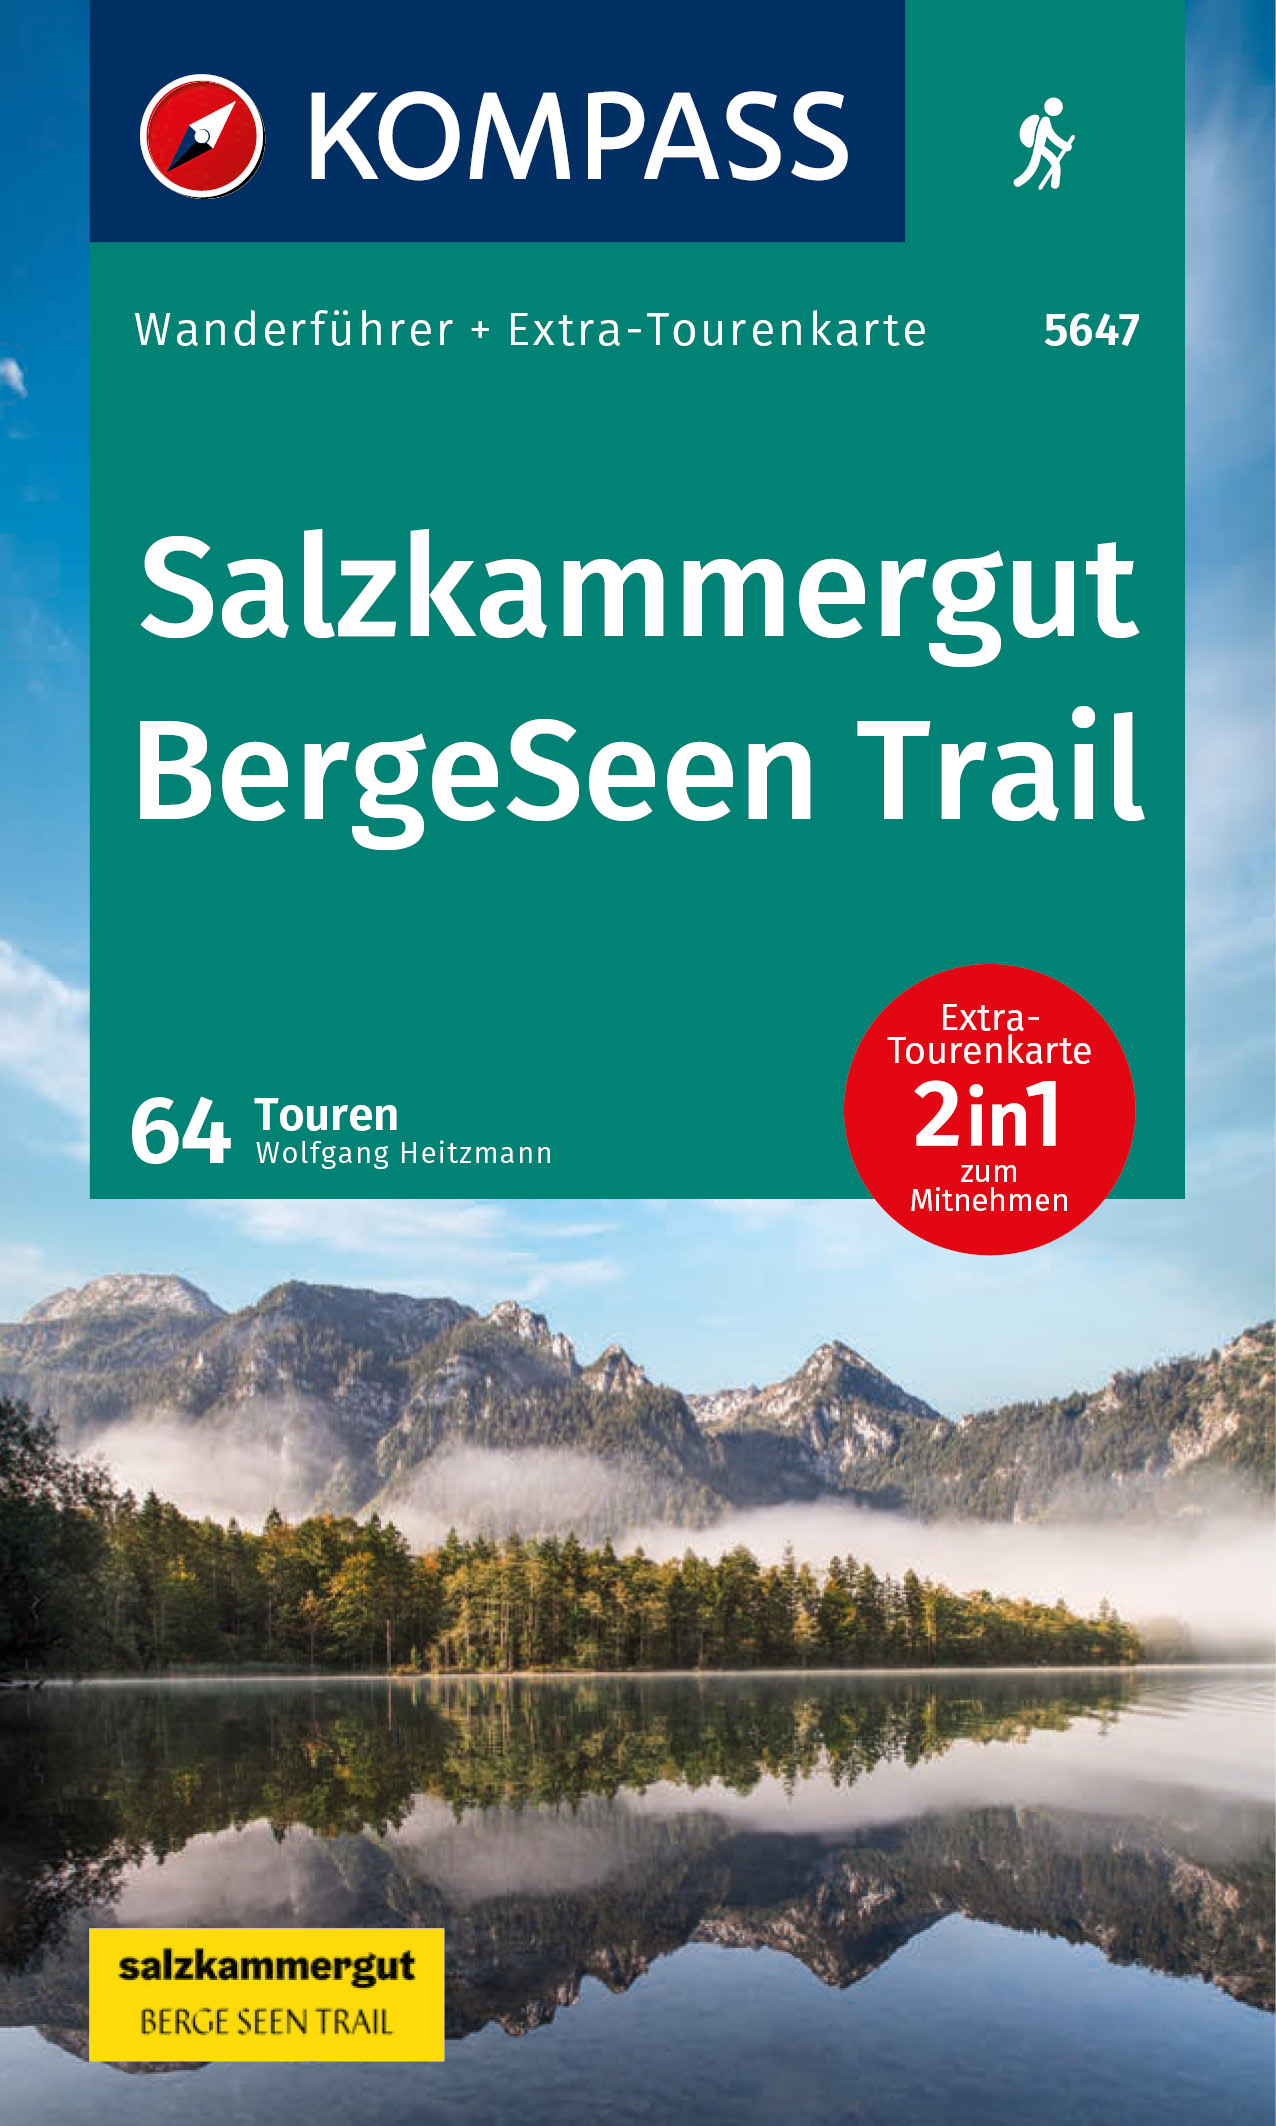 Kompass Wanderführer - Salzkammergut BergeSeen Trail